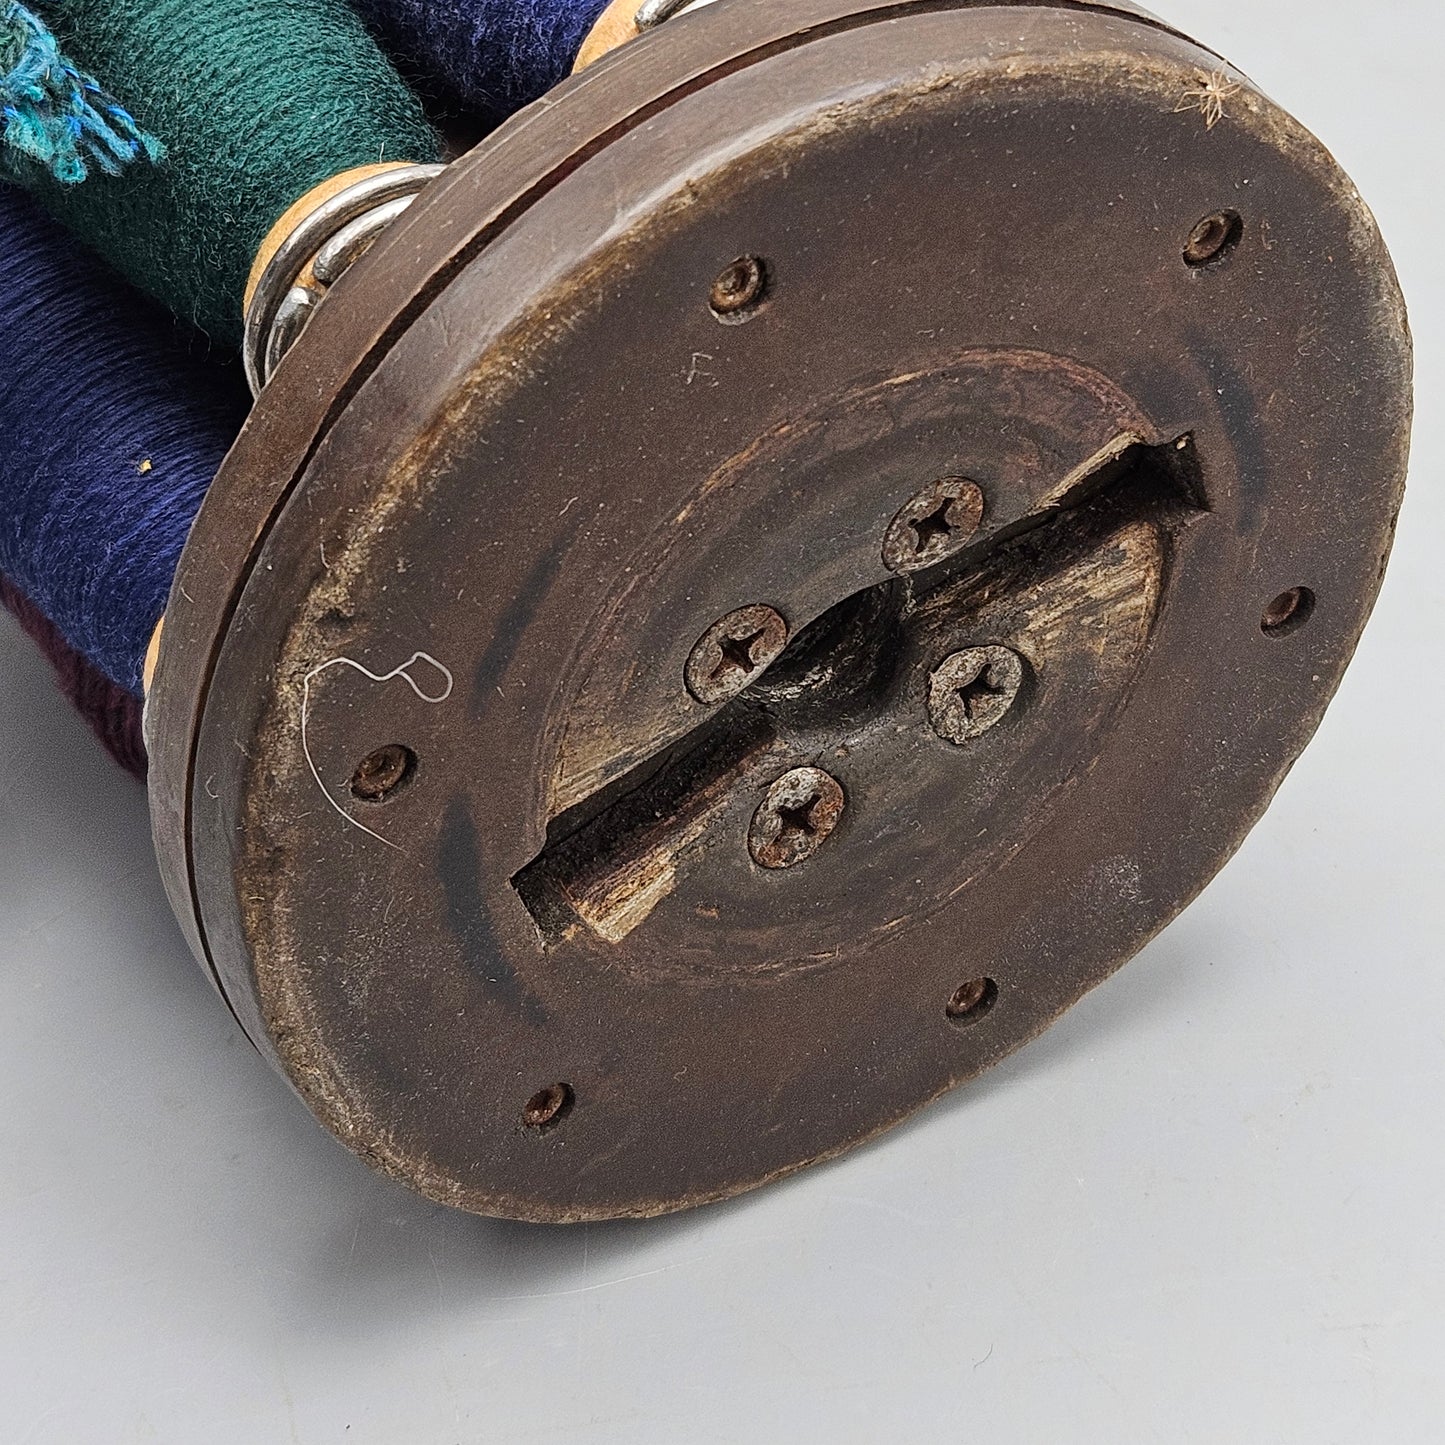 Vintage Spool Thread Bobbins on Holder LHP